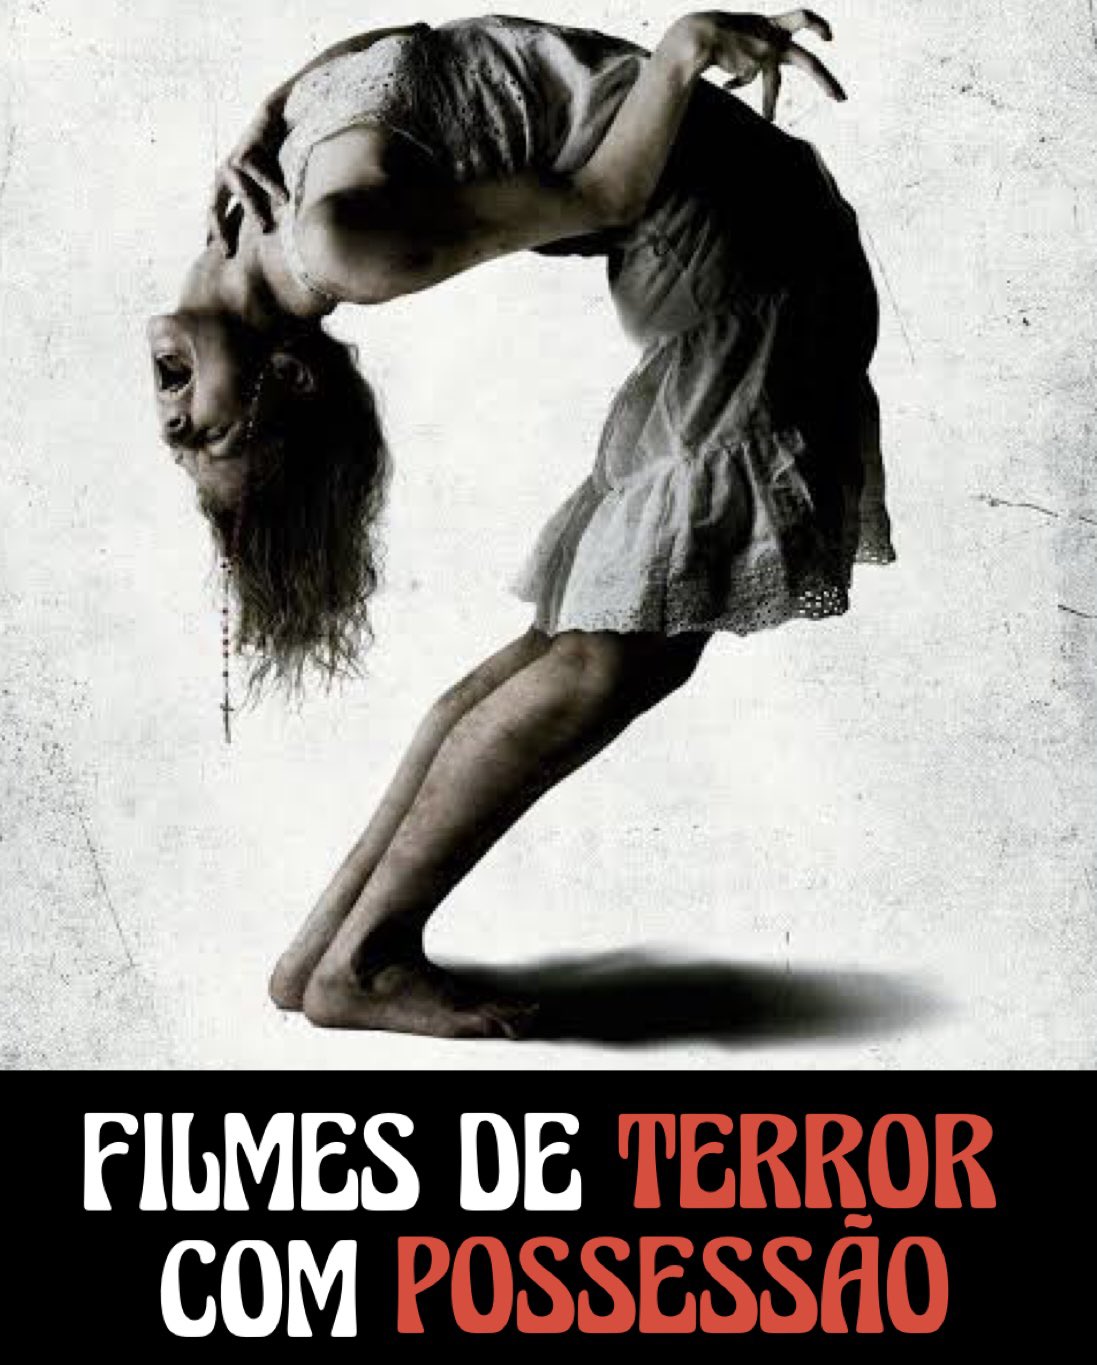 Portal do Medo on X: Melhores filmes de TERROR com POSSESSÃO para